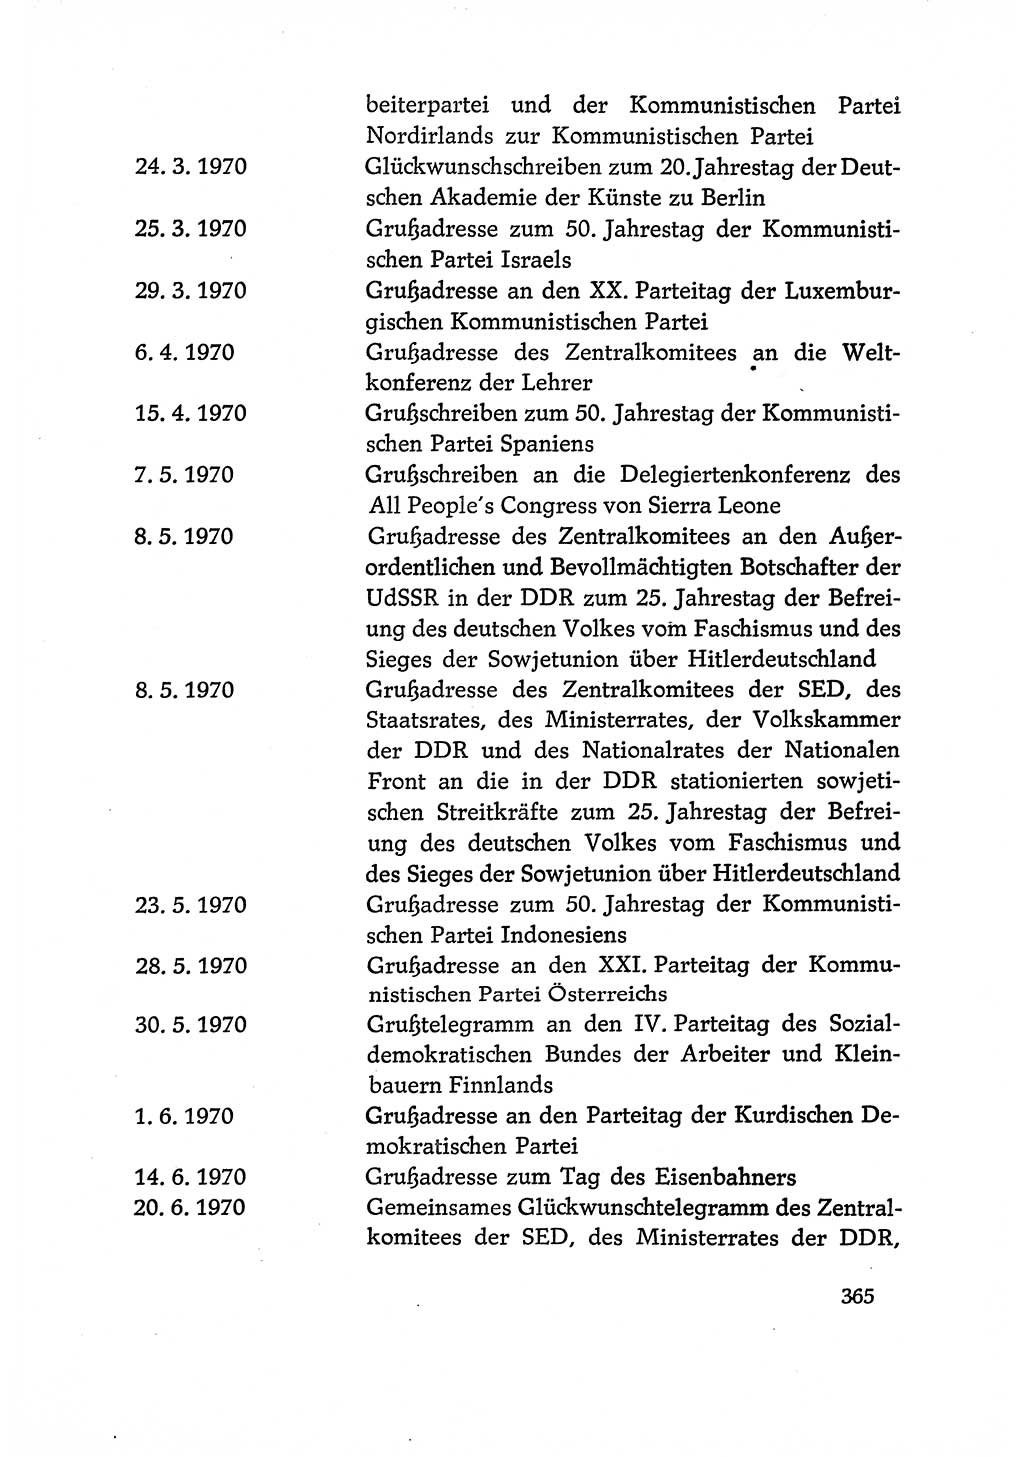 Dokumente der Sozialistischen Einheitspartei Deutschlands (SED) [Deutsche Demokratische Republik (DDR)] 1970-1971, Seite 365 (Dok. SED DDR 1970-1971, S. 365)